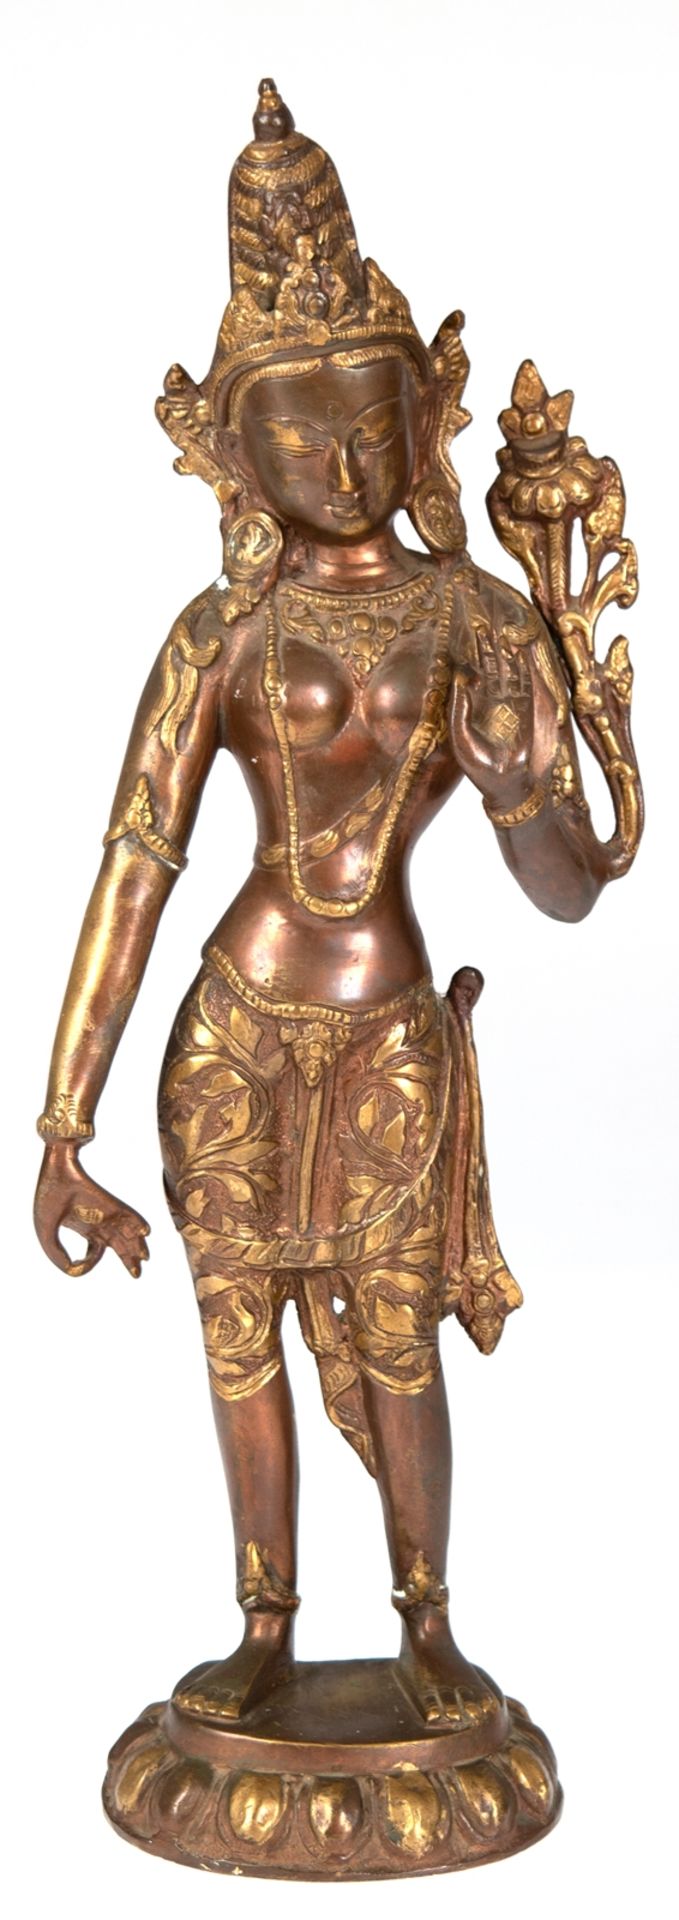 Figur "Shakti", indische Göttin im Hinduismus für die weibliche Urkraft des Universums, Bronze, z.T